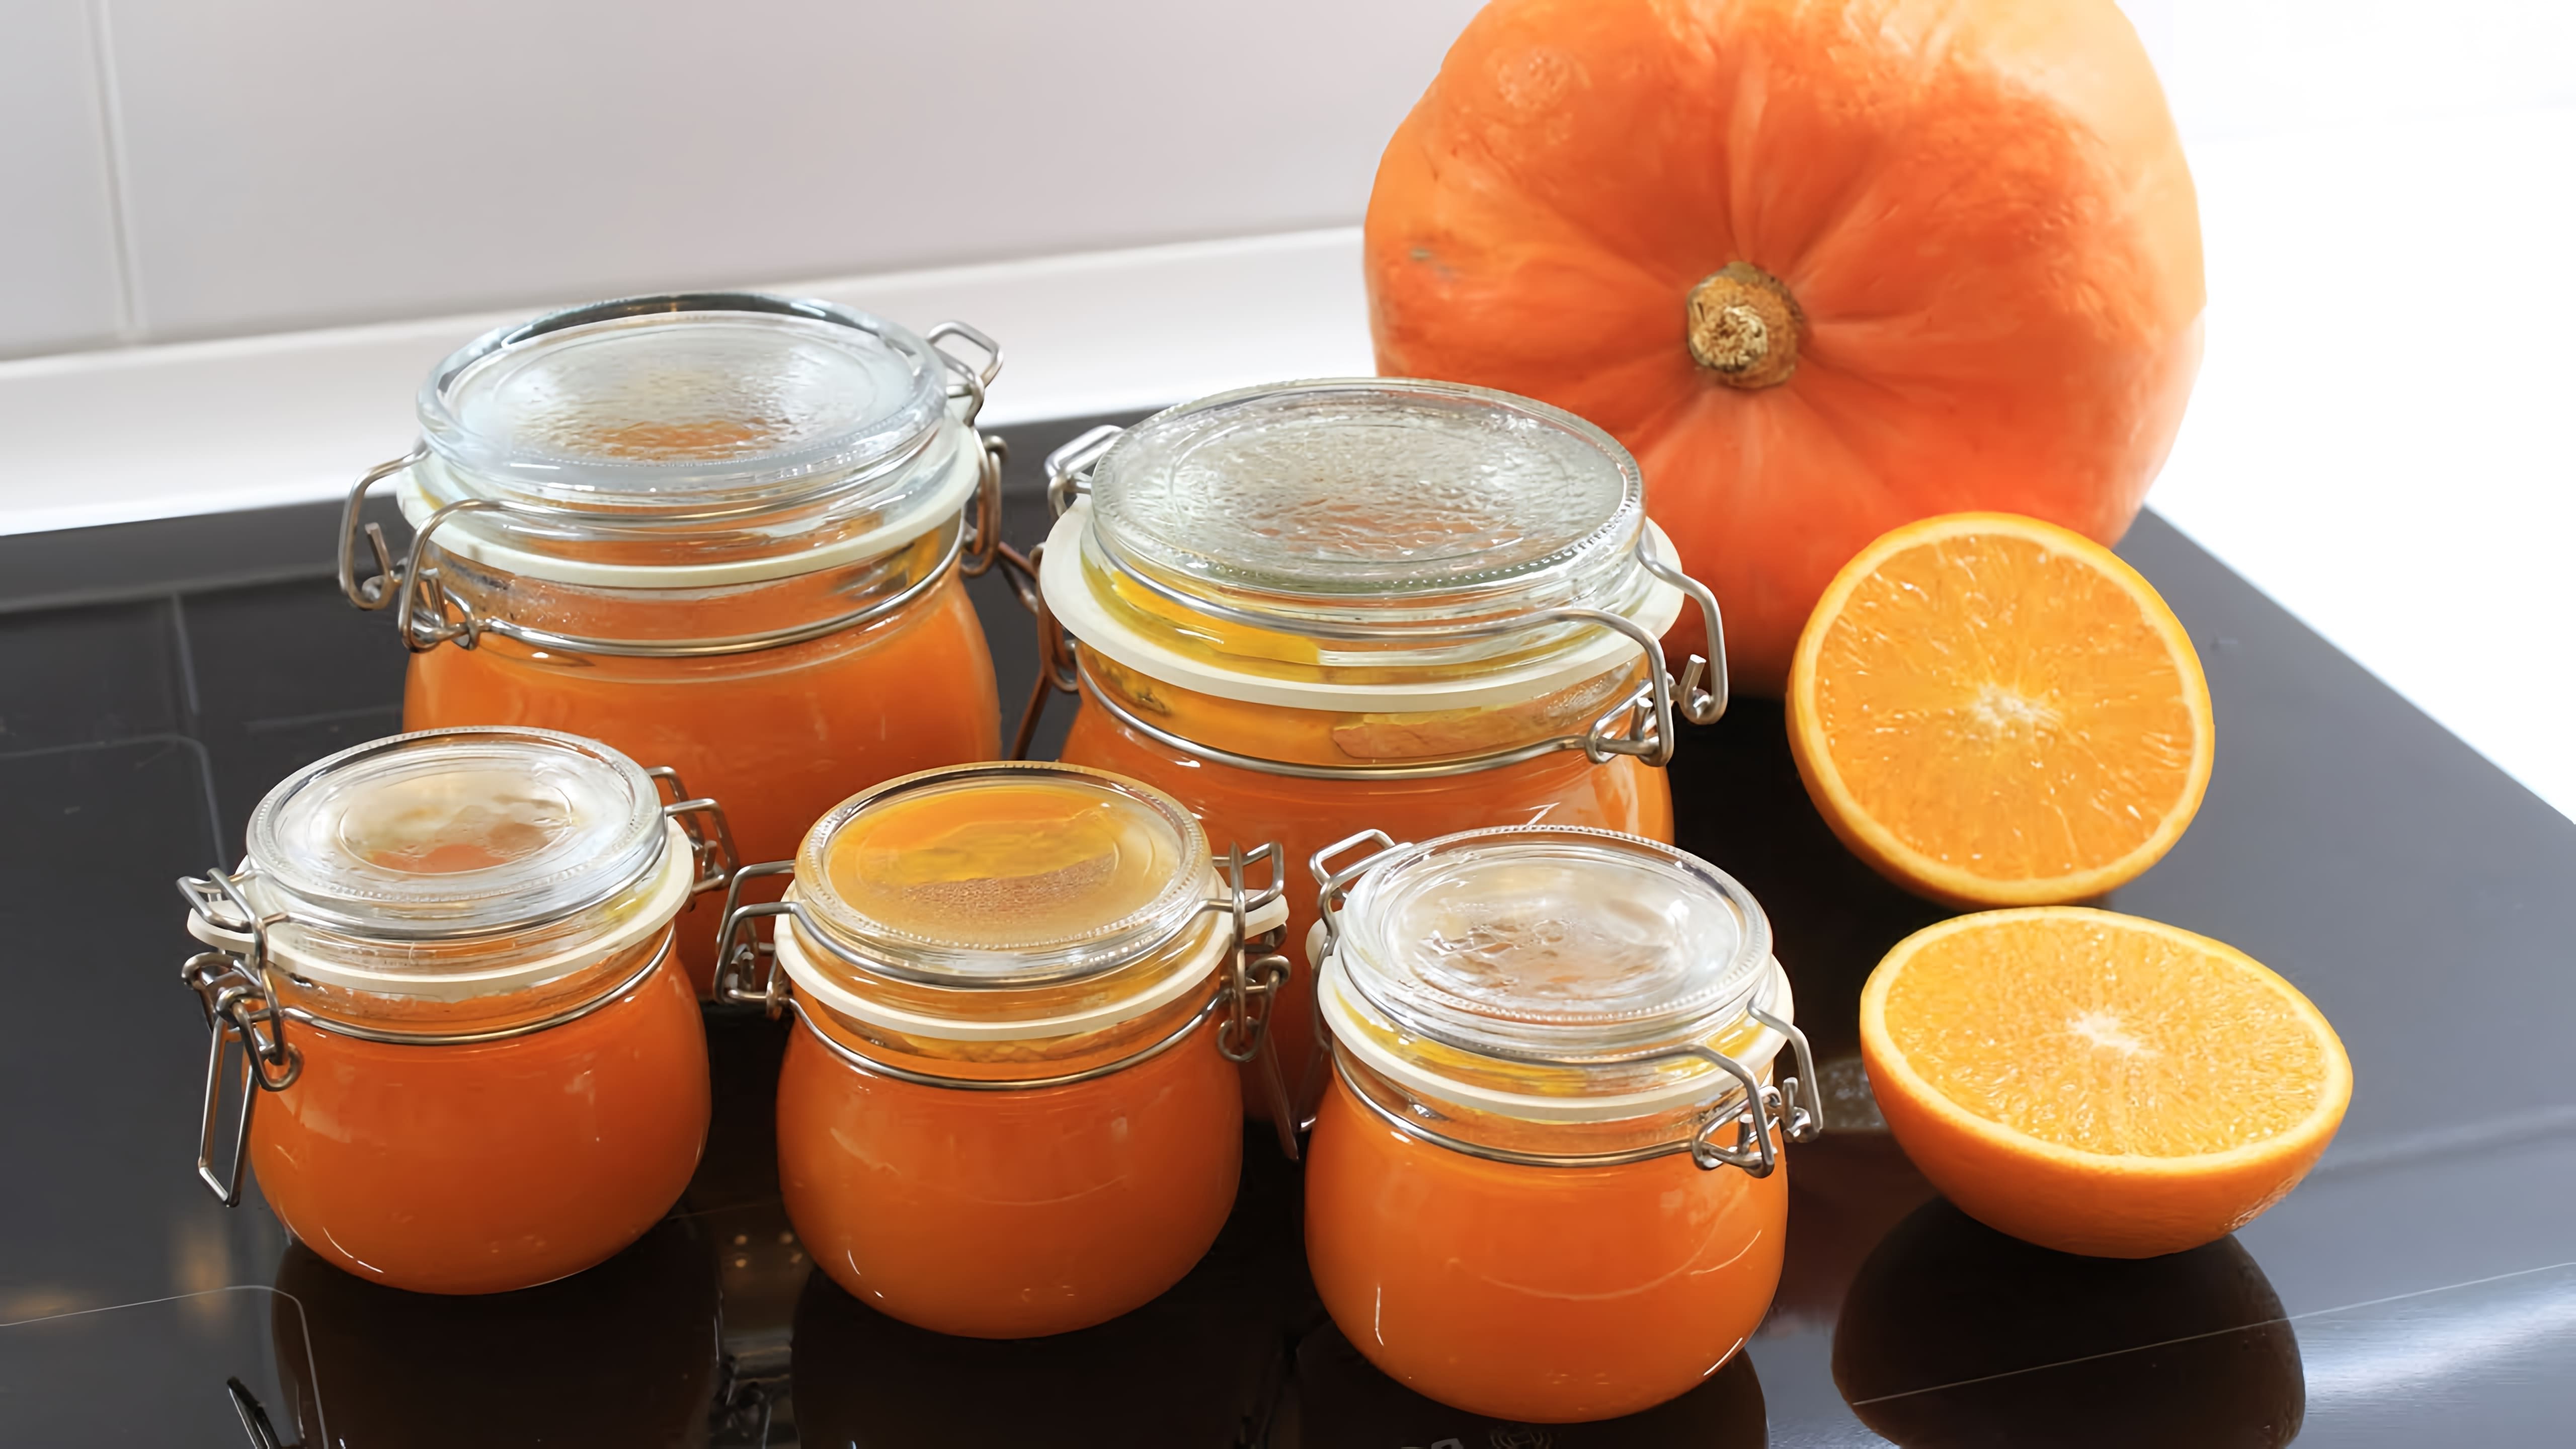 Сегодня готовим очень вкусный Джем Солнечный из тыквы с ароматом апельсина и лимона! #тыква #блюдаизтыквы... 